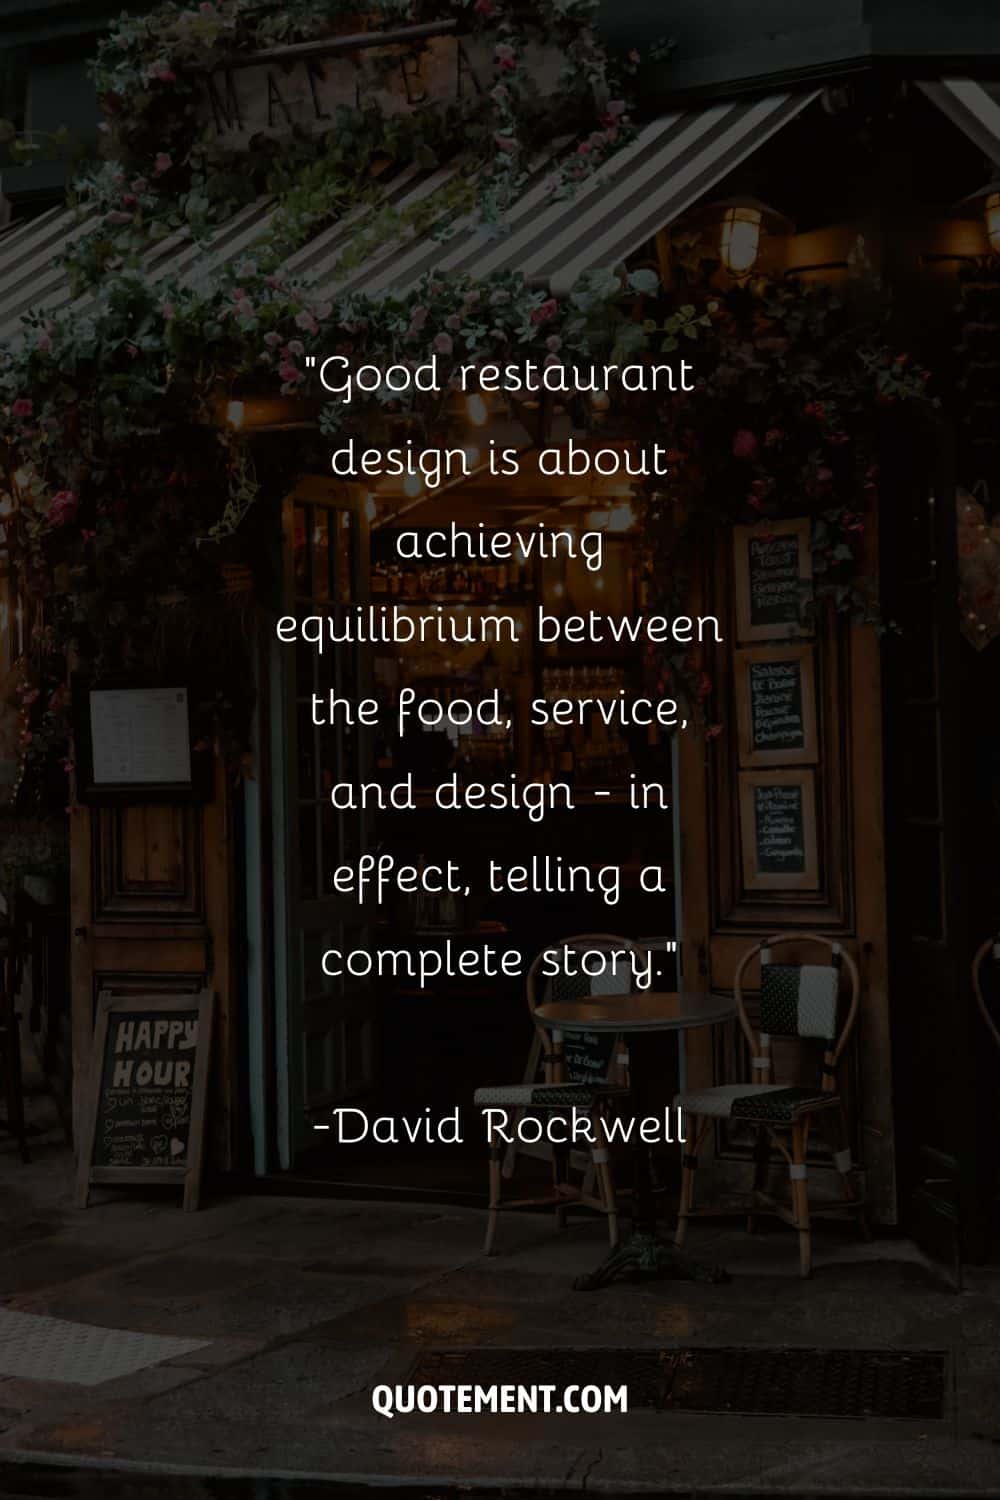 Imagen de un restaurante que representa una cita para restaurantes.